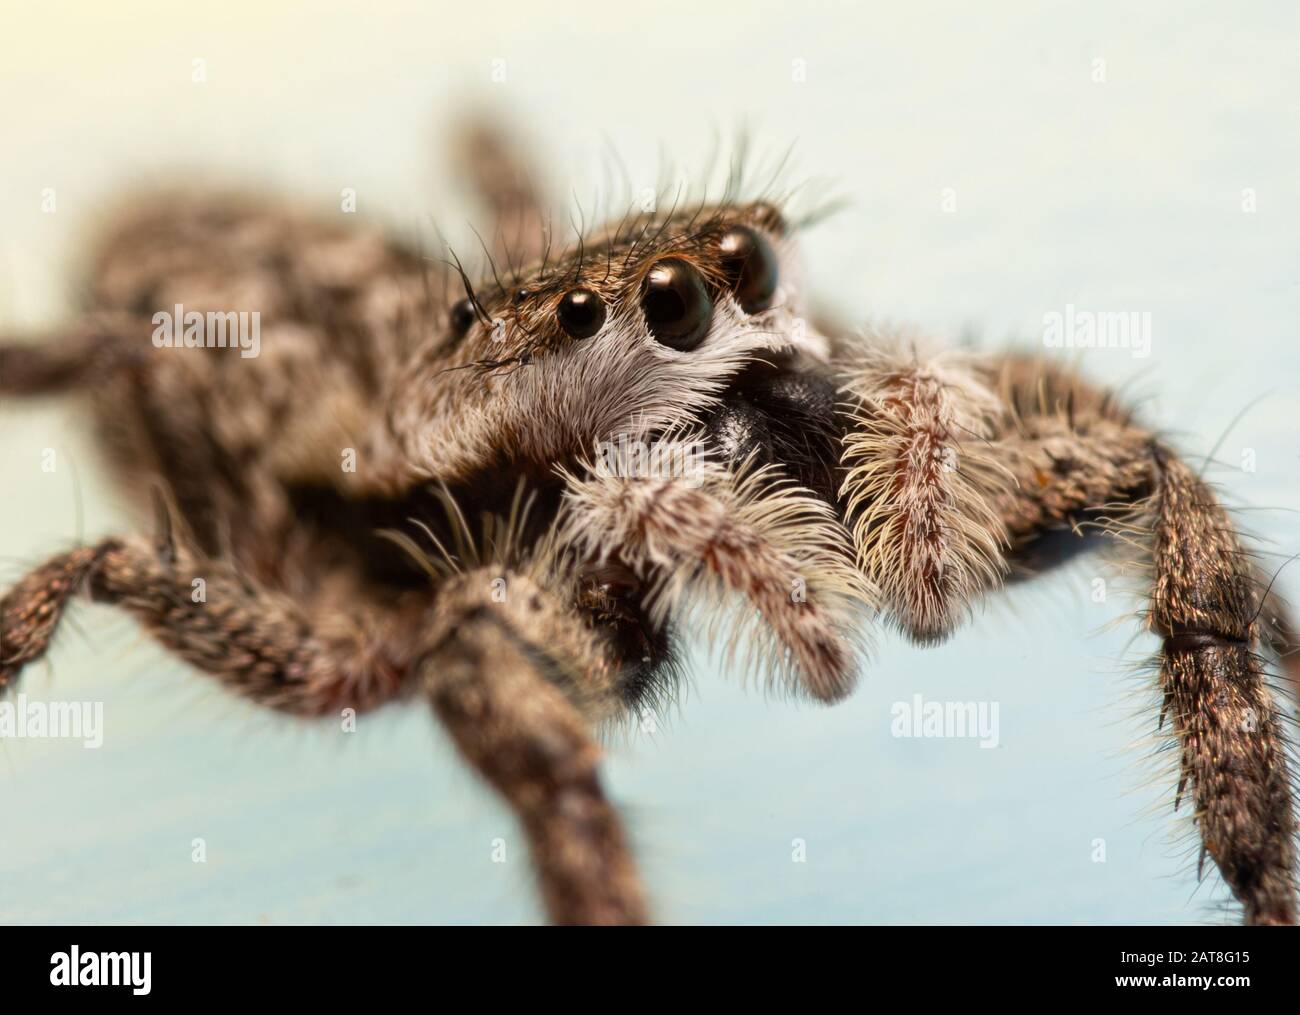 Vista lateral de una araña tan Jumping hembra adorablemente linda con cara borrosa Foto de stock